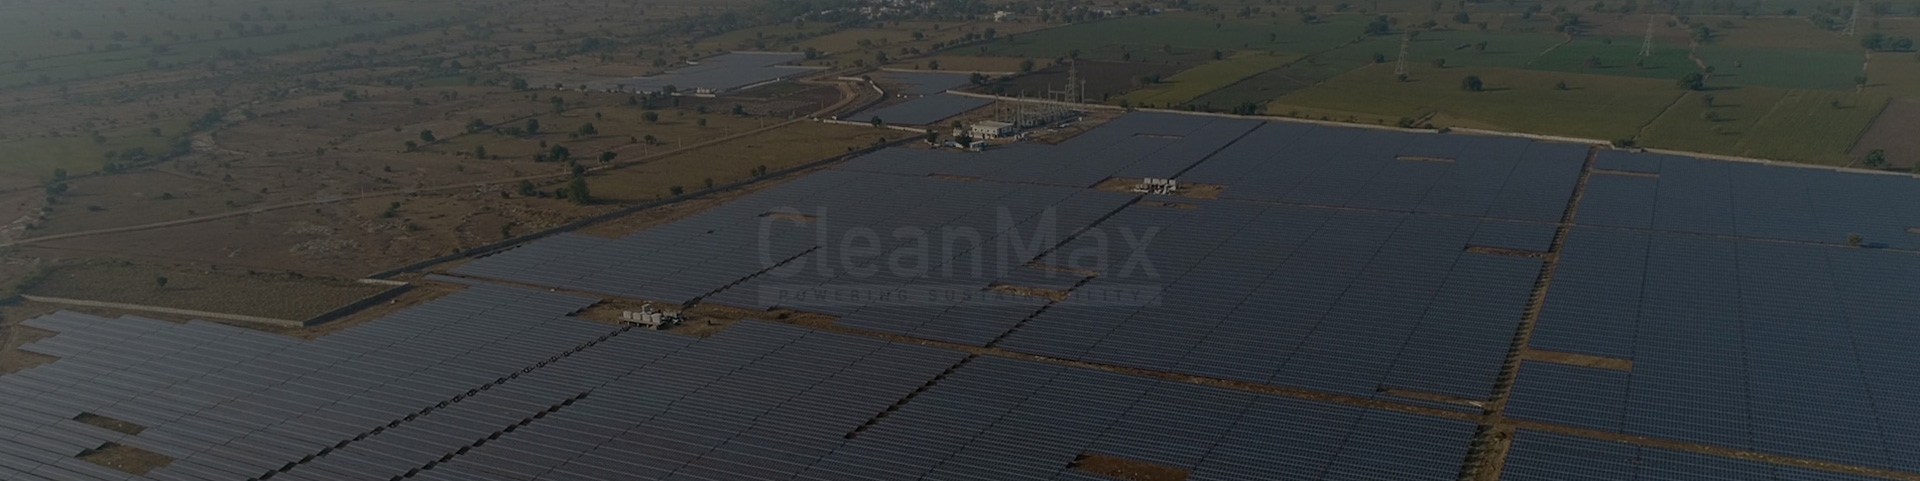 Private Solar Farm